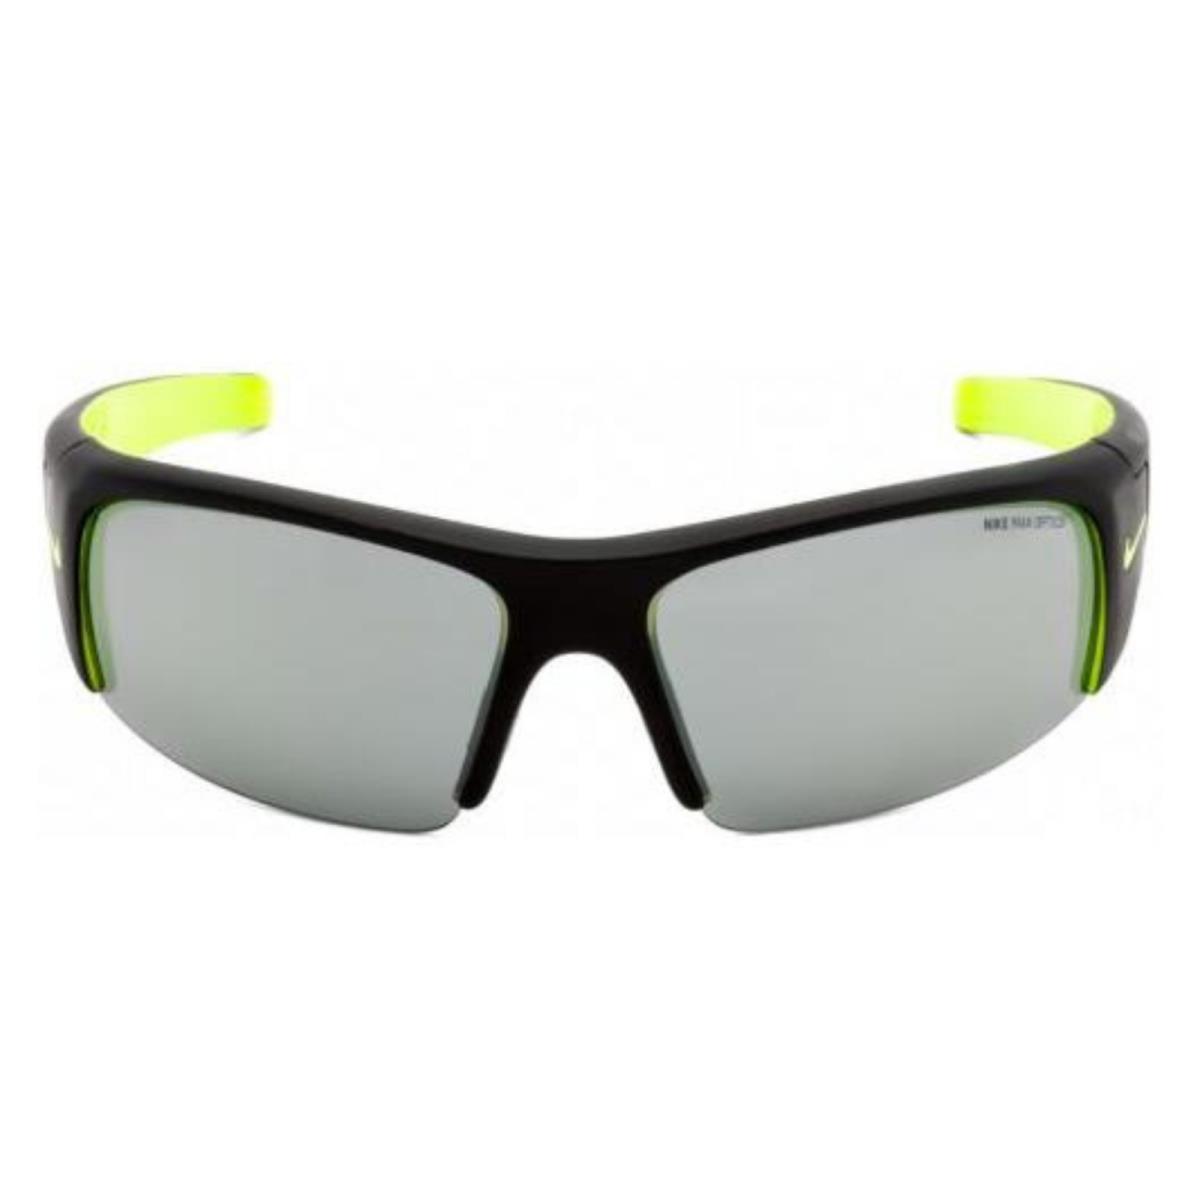 Nike Sunglasses Diverge EV0325 007 64 Volt Lens 64mm 125mm 13mm with Case - Frame: Black, Lens: